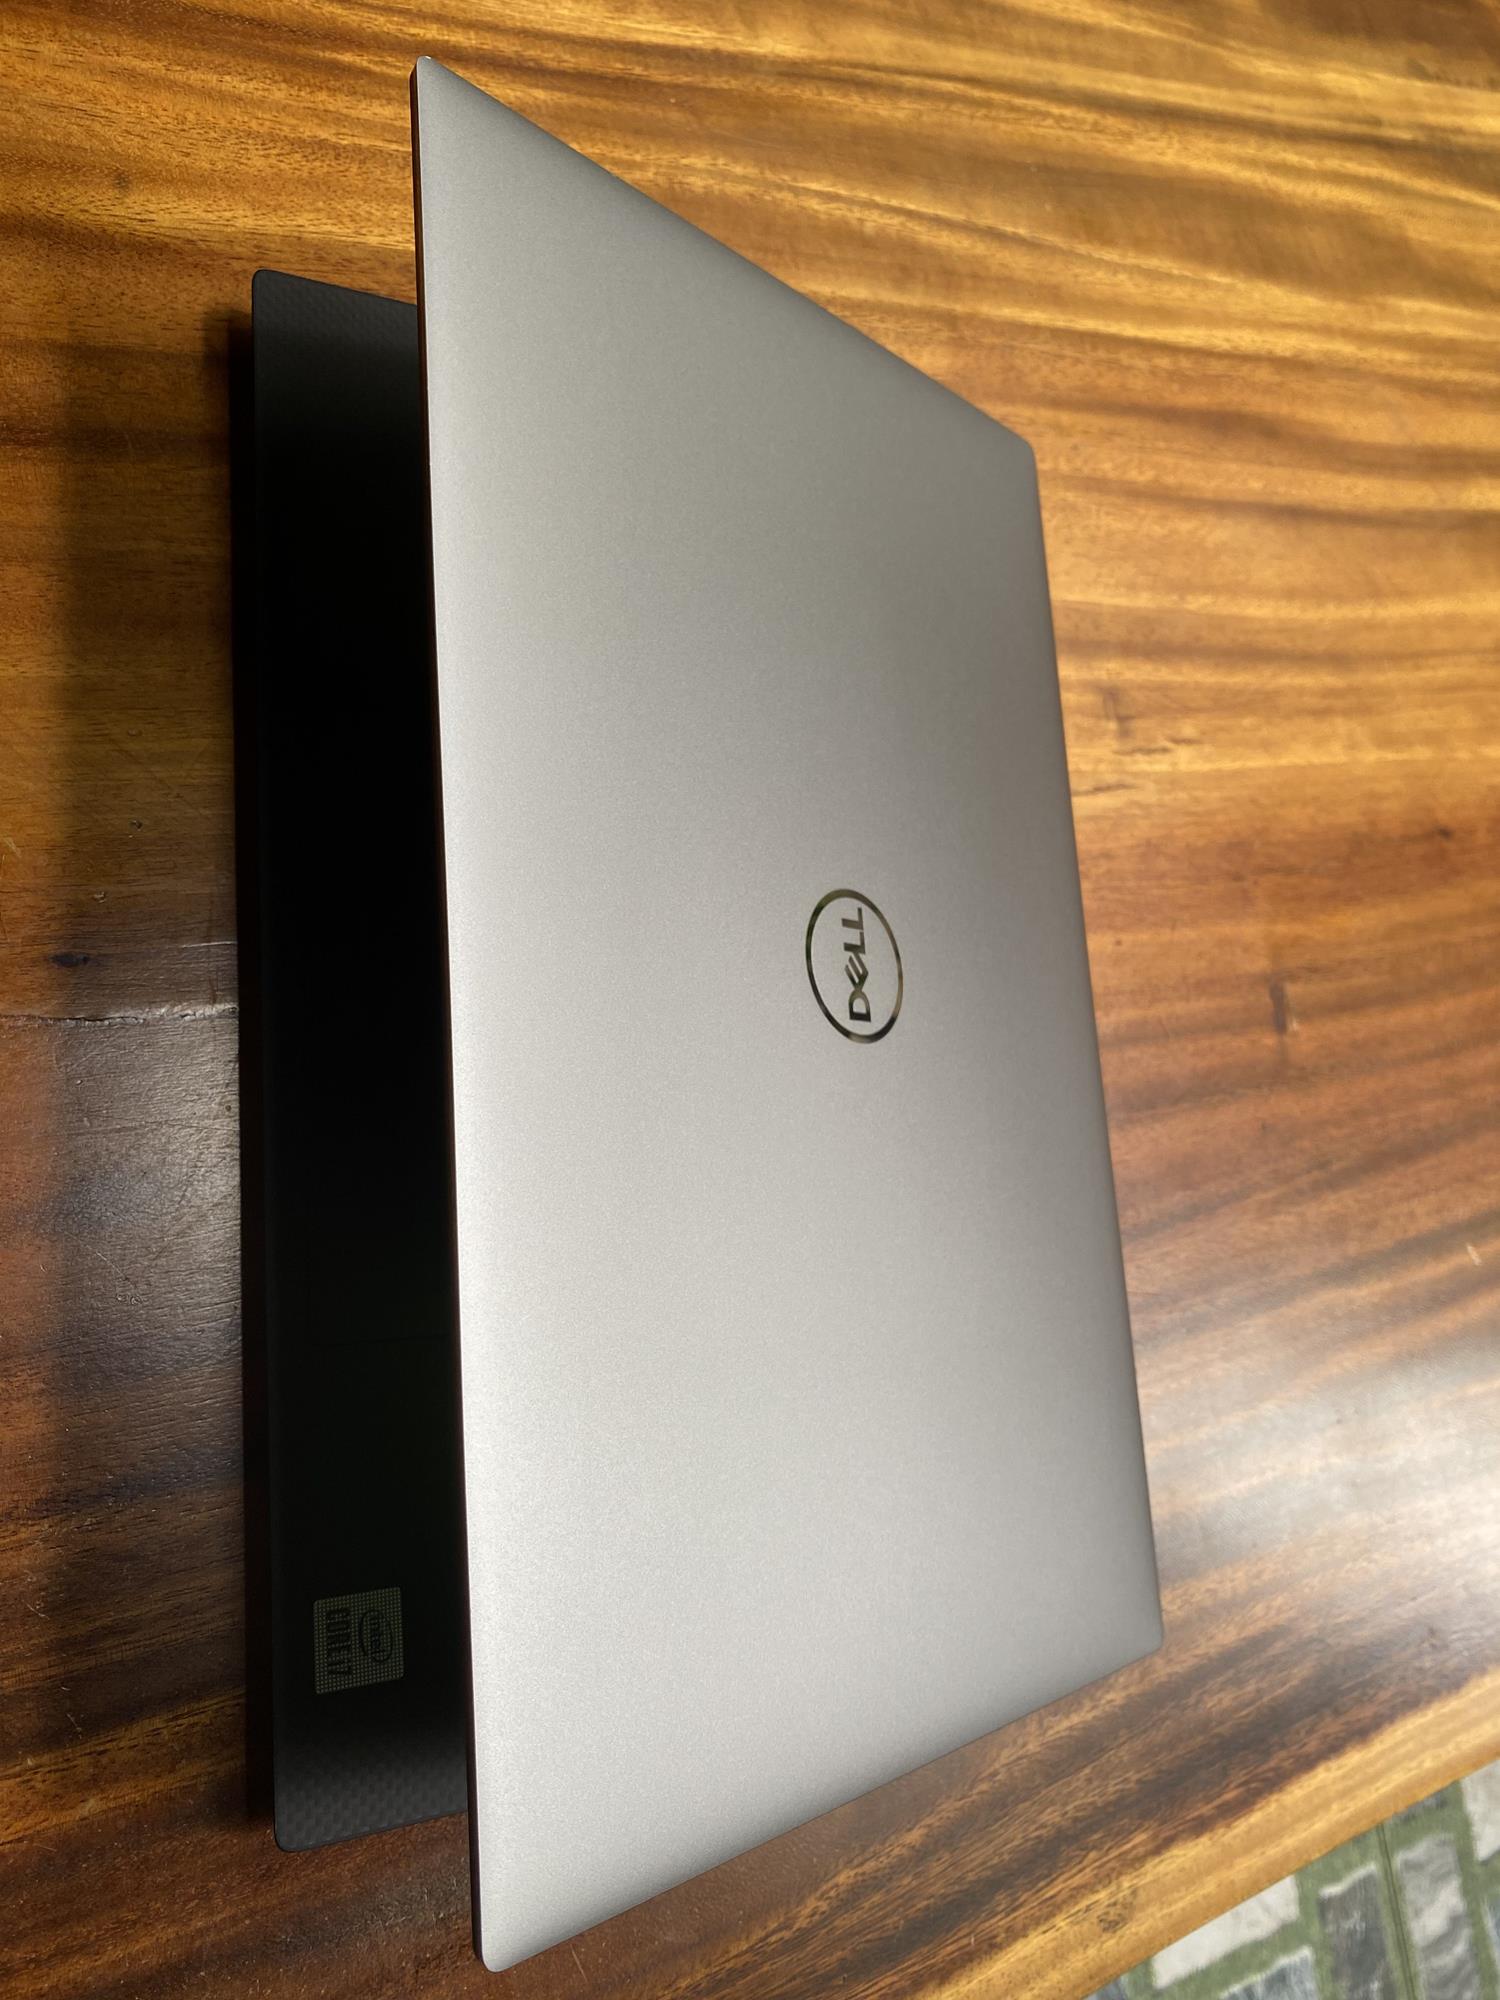 Dell Precision 5550 Core i7, Xeon, Full HD 1080, 4K touch - Laptop Cũ Giá  Rẻ Triều Phát